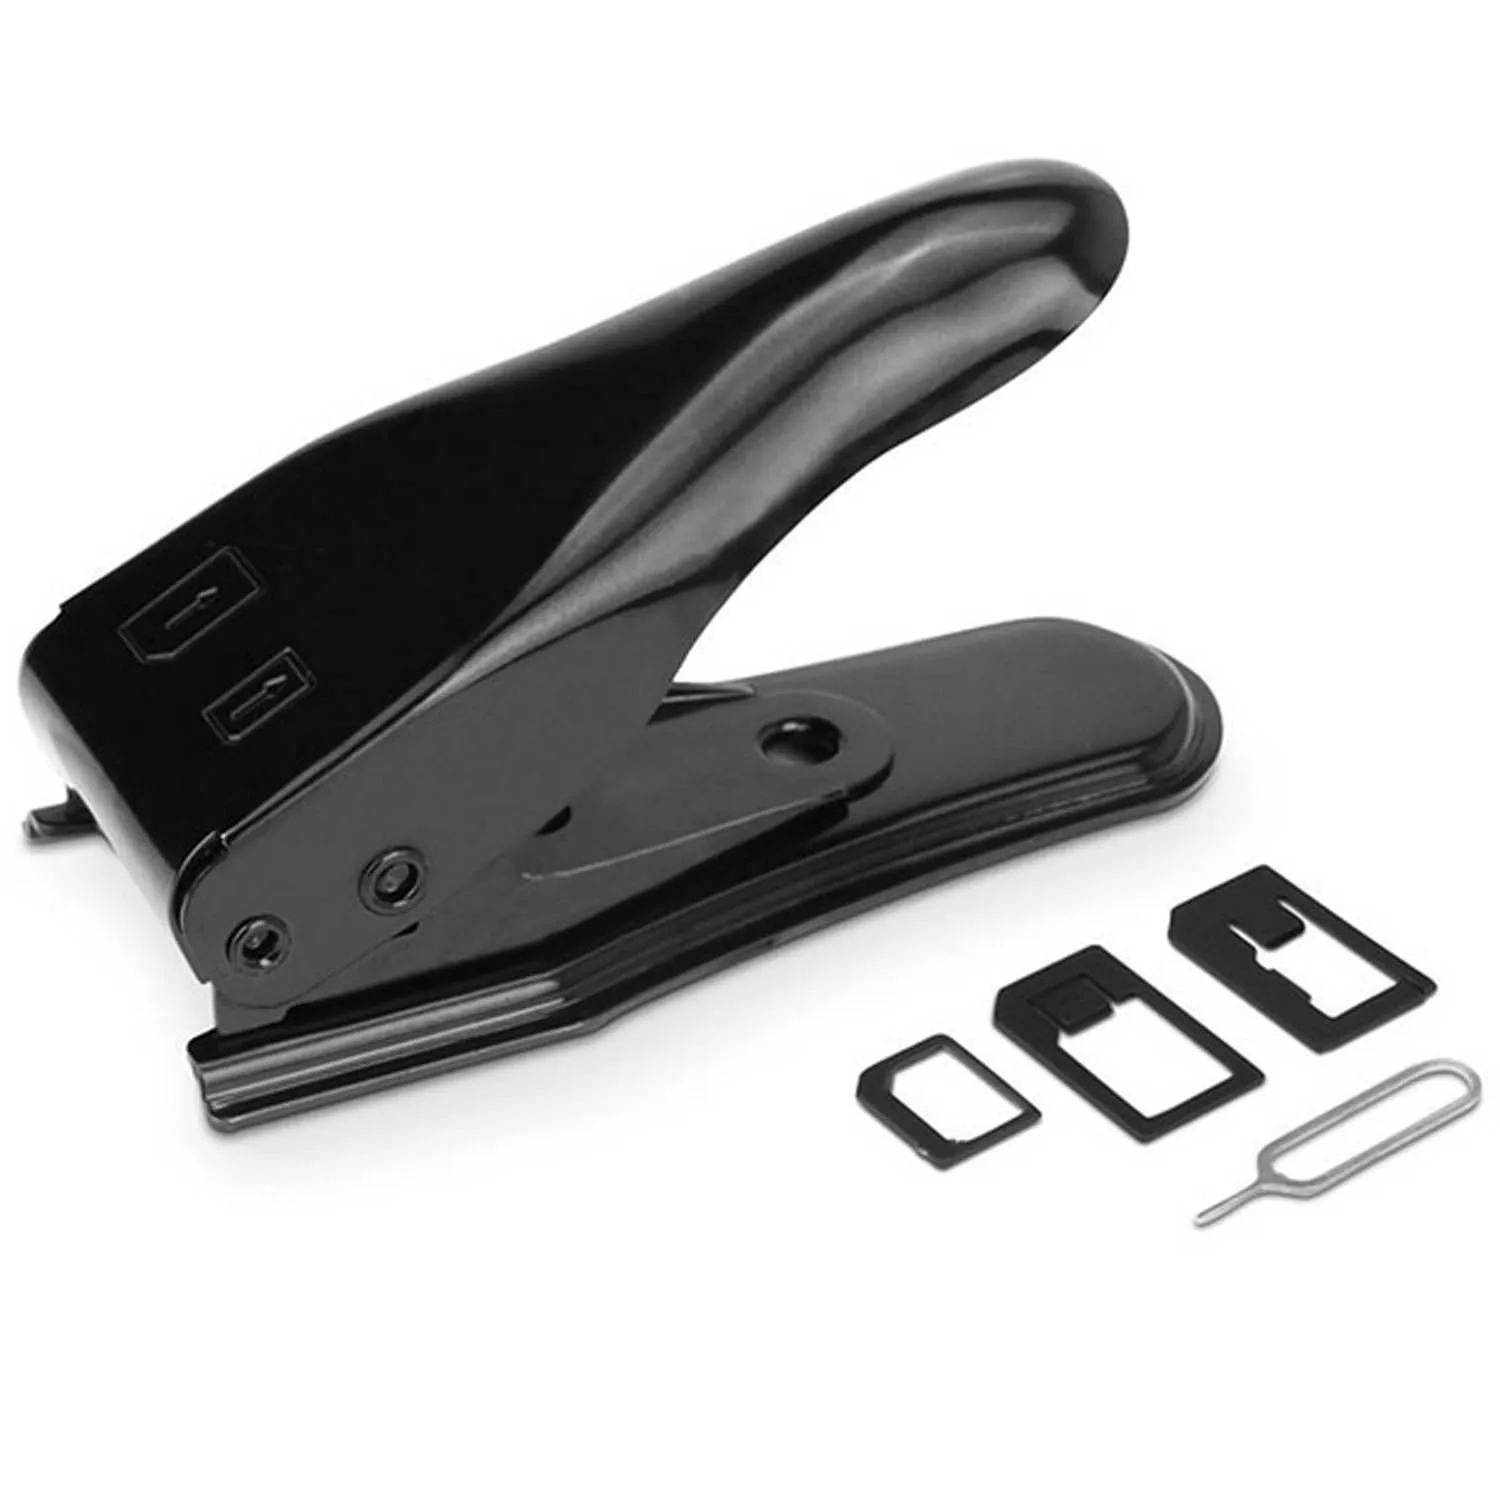 Besegad Нормальный/микро сим-карты Nano SIM Резак для сим-карт для iPhone 5 6 6s 7 plus samsung S6 с 3 адаптер 1 булавка для извлечения иглы